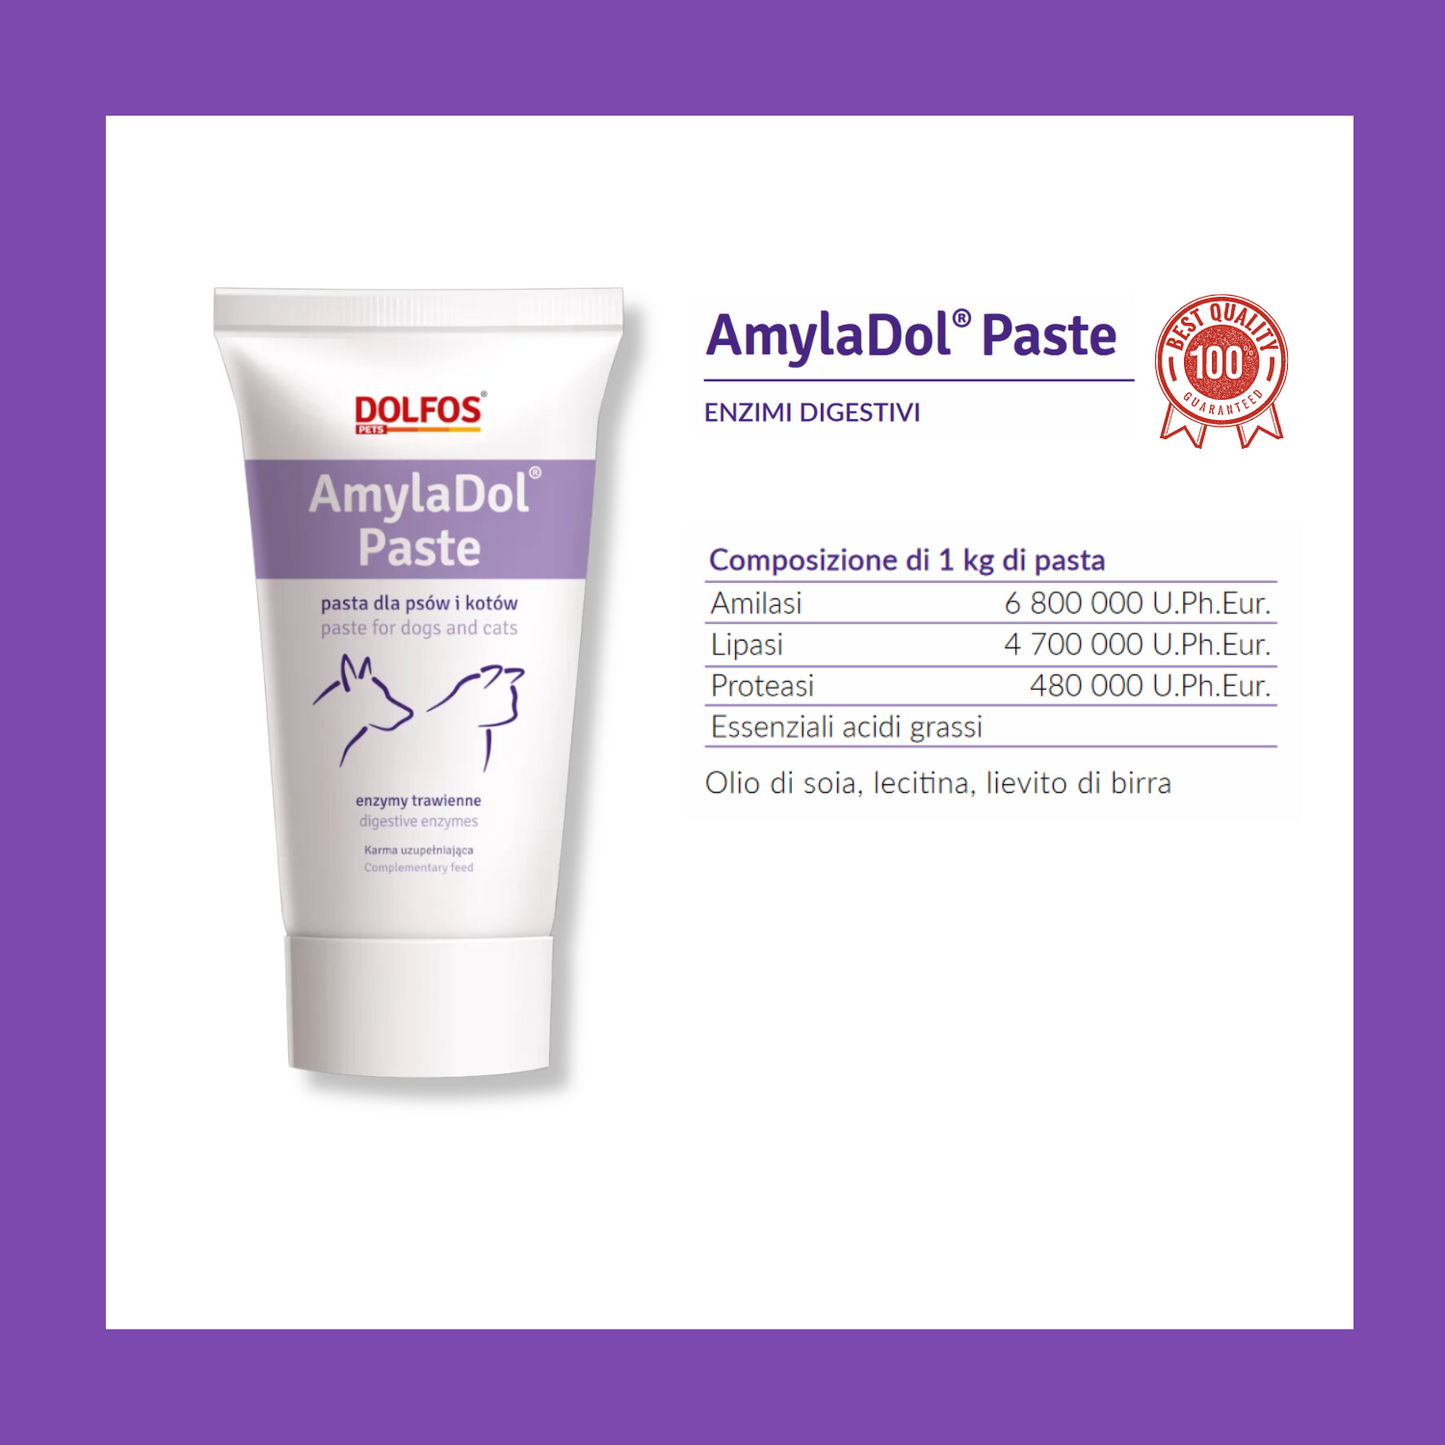 AmylaDol Paste 50 - "..... enzimi digestivi naturali, Amilasi - Lipasi - Proteasi"